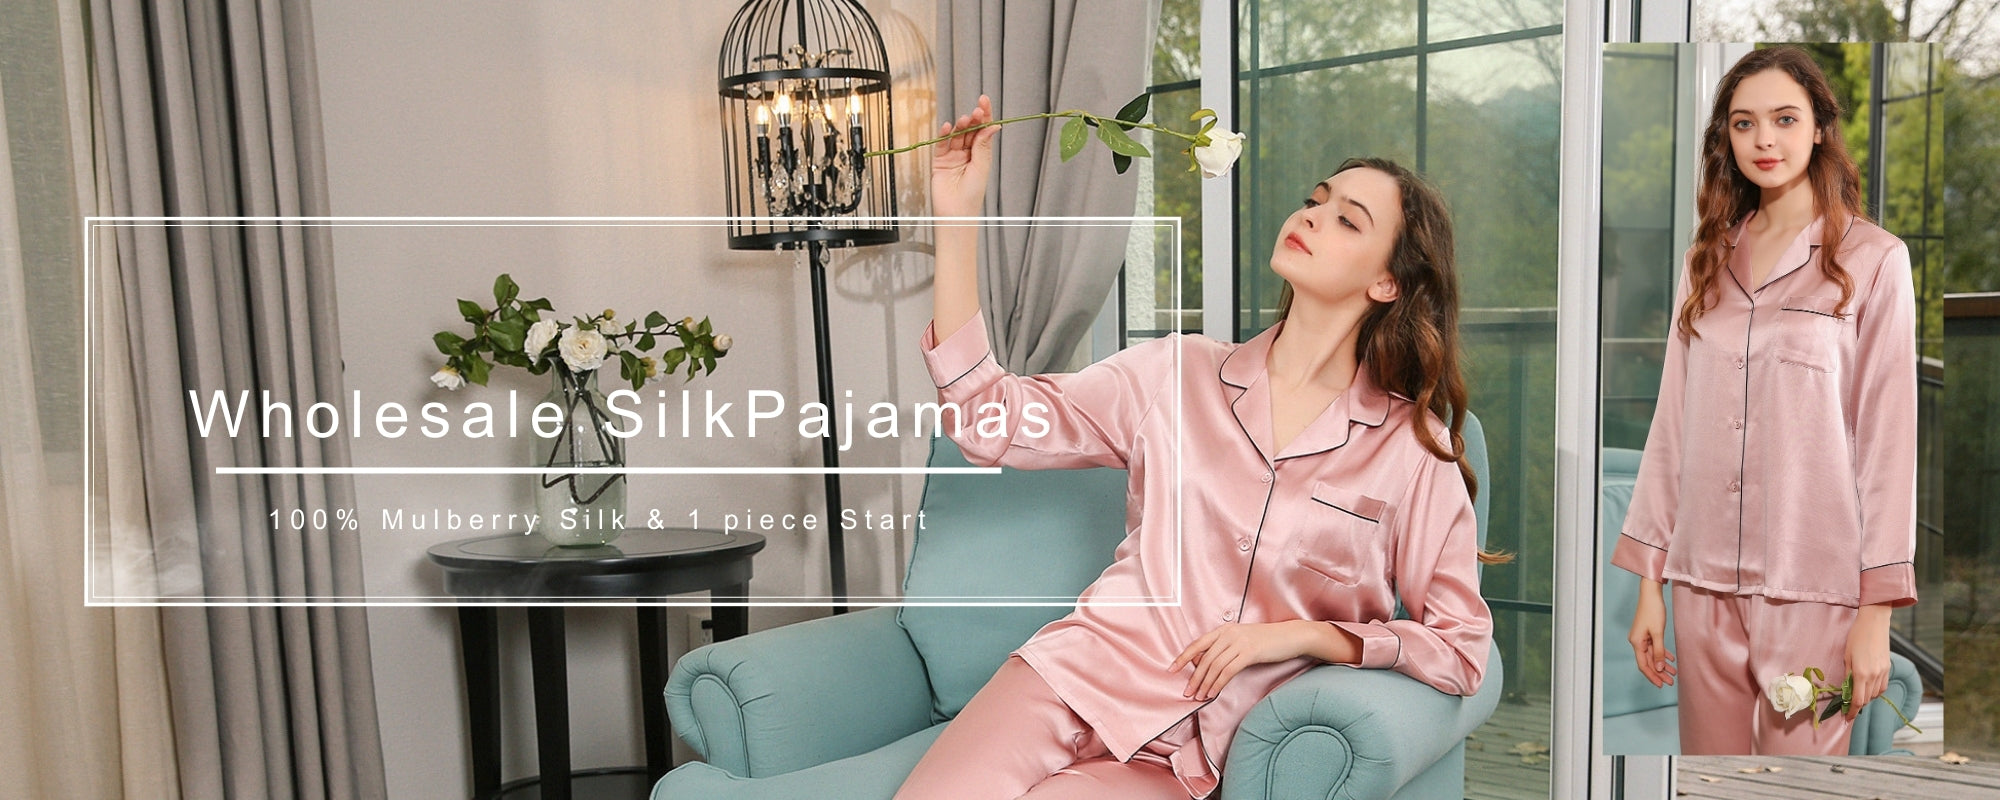 wholesale silk pajamas